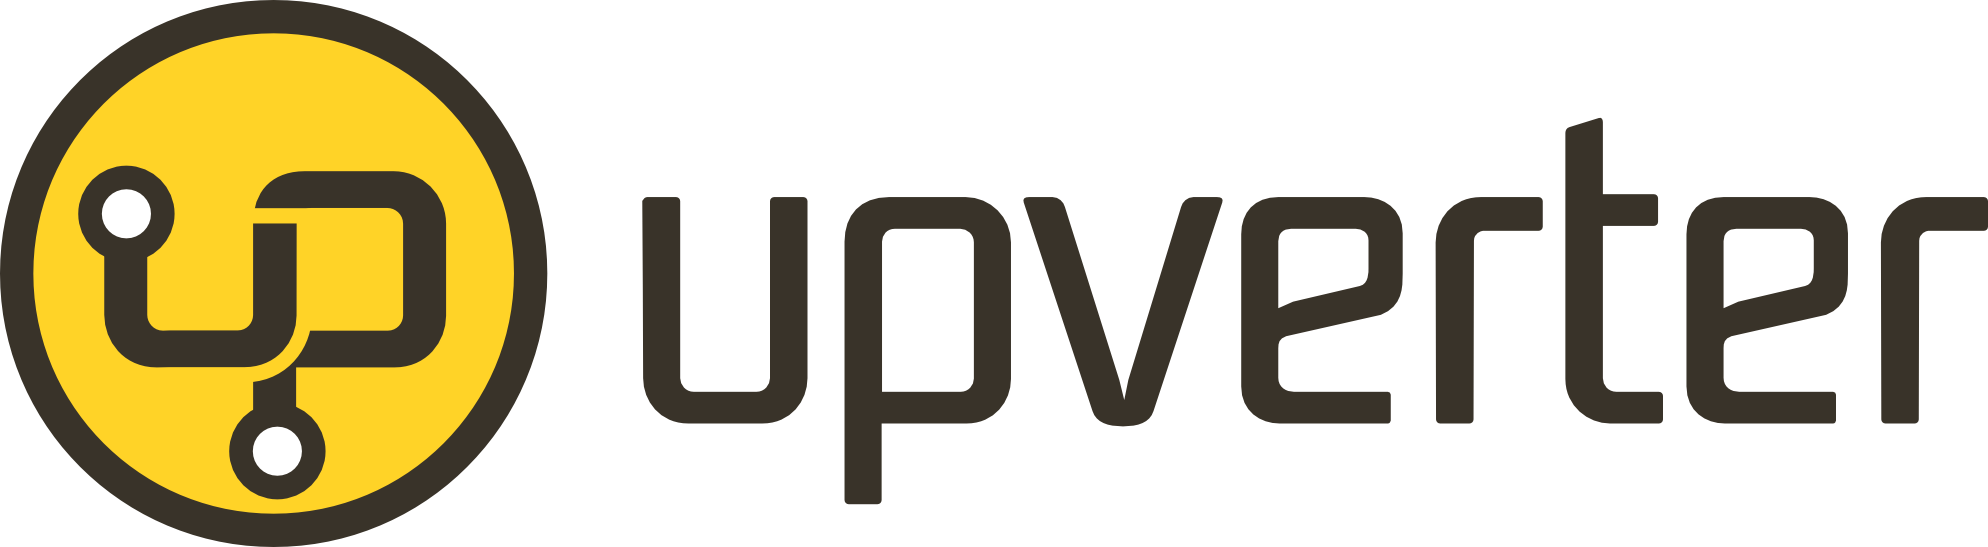 Upverter, The Online Hardware Design Hub - Alix Partners Logo Png (1988x547), Png Download